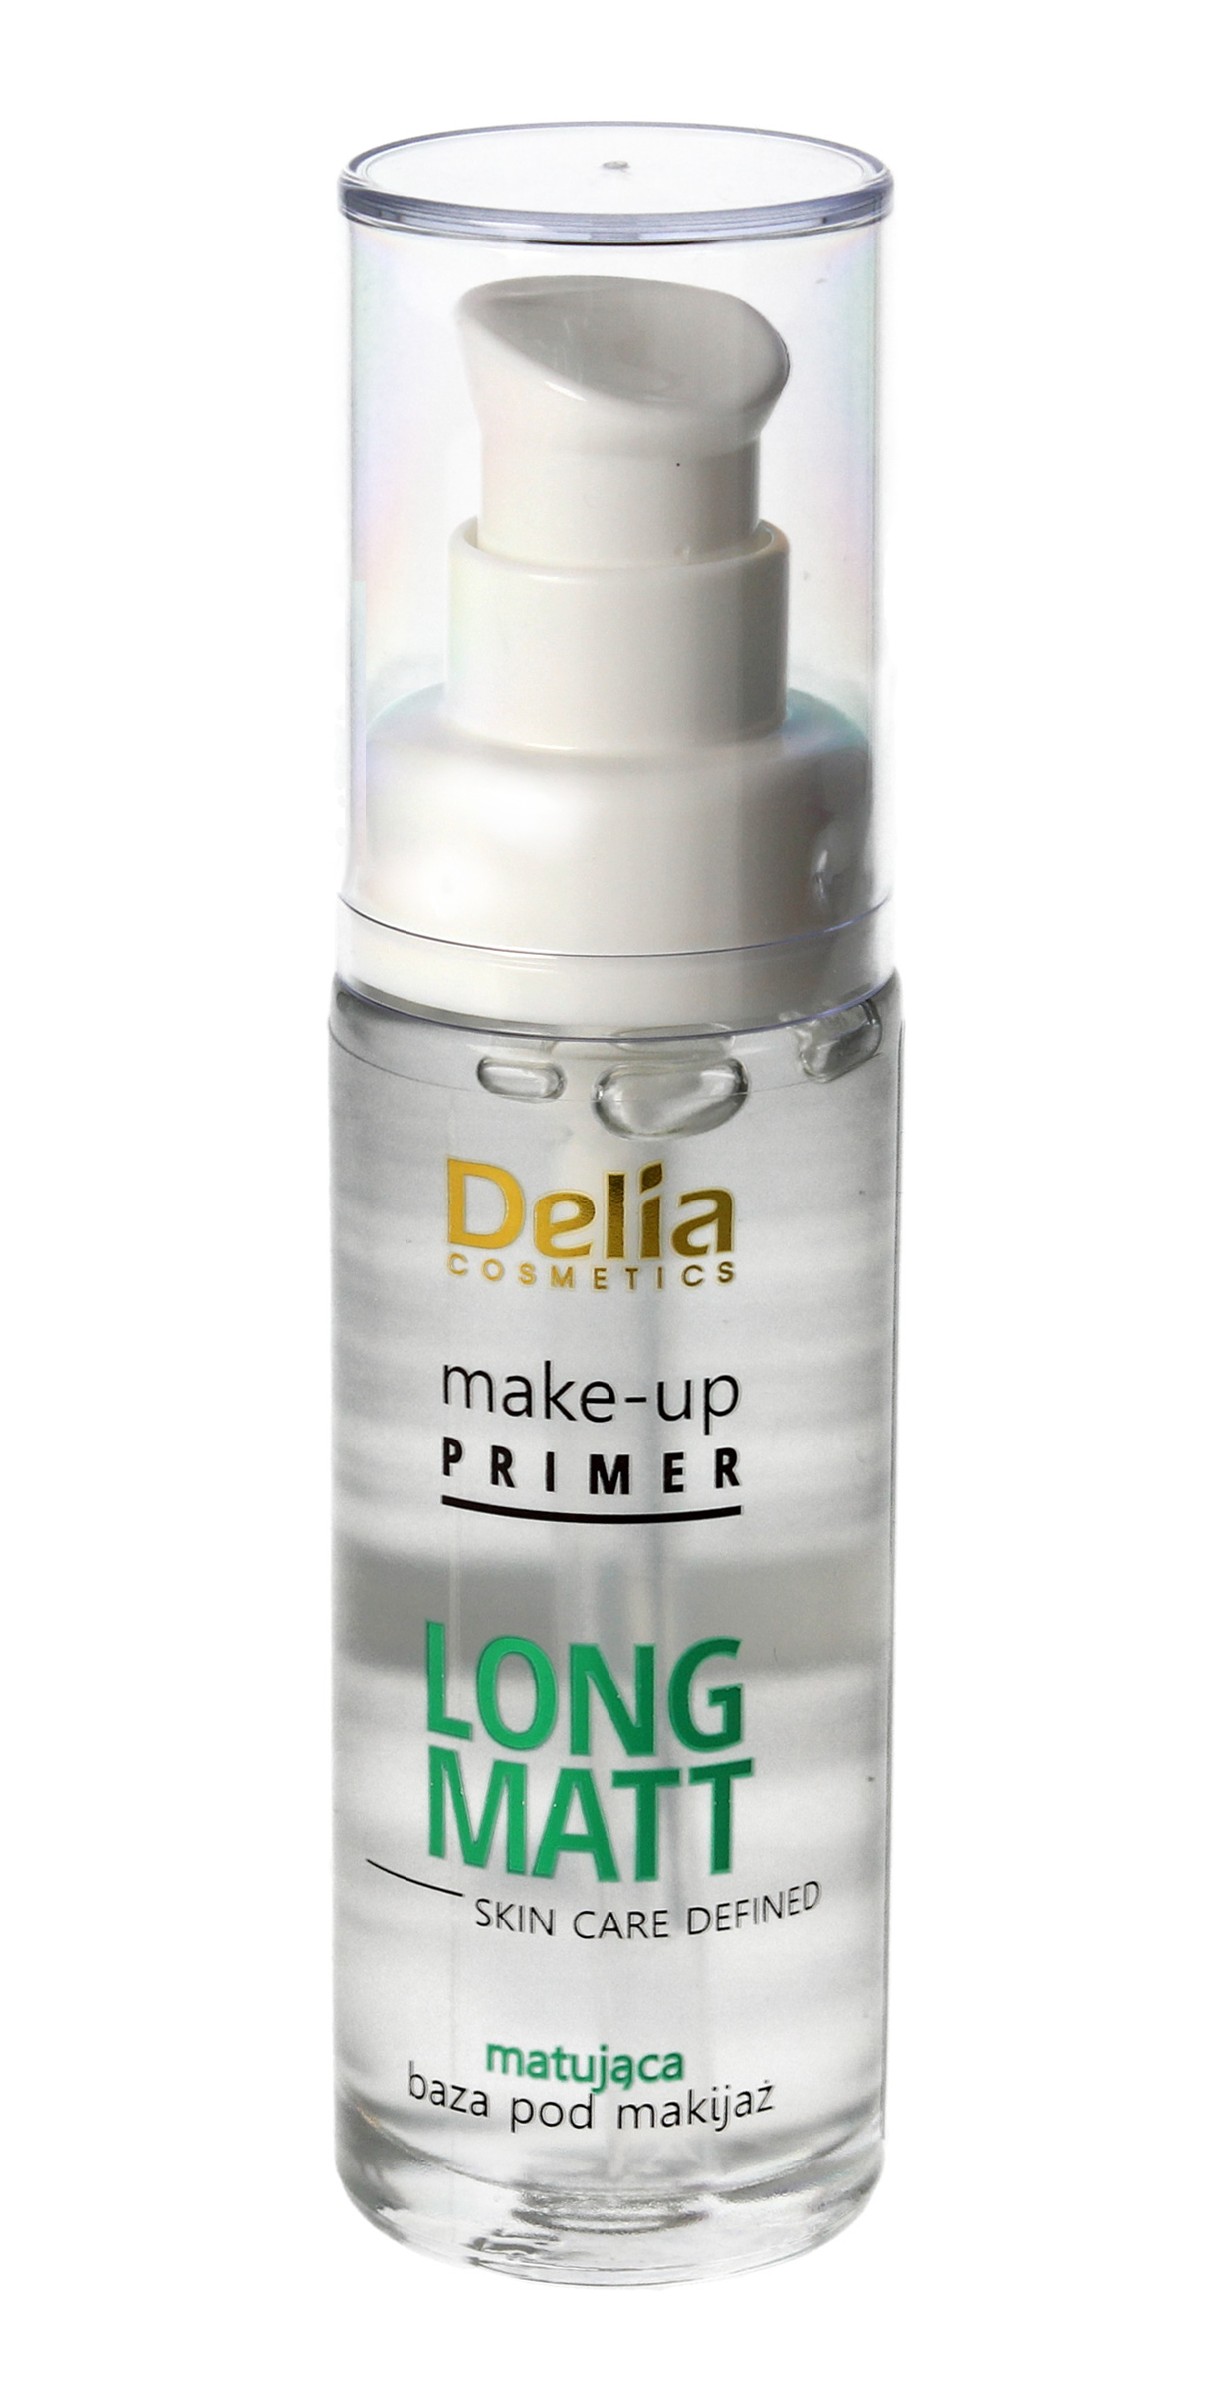 Delia Cosmetics Baza pod makijaż Long Matt matująca  30ml